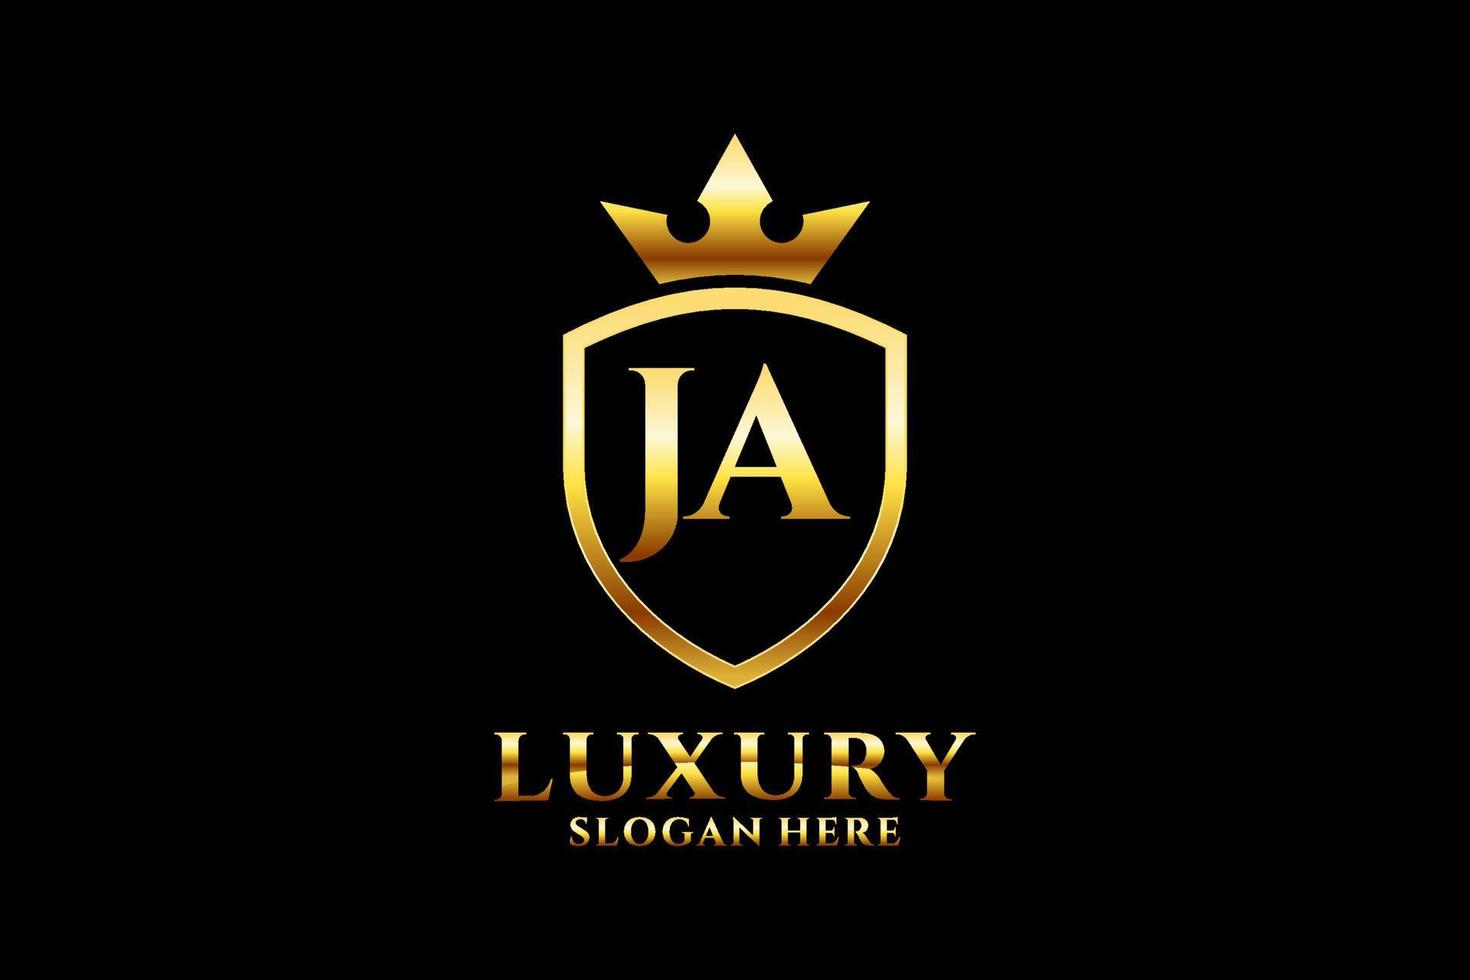 Initial ja elegantes Luxus-Monogramm-Logo oder Abzeichen-Vorlage mit Schriftrollen und Königskrone - perfekt für luxuriöse Branding-Projekte vektor